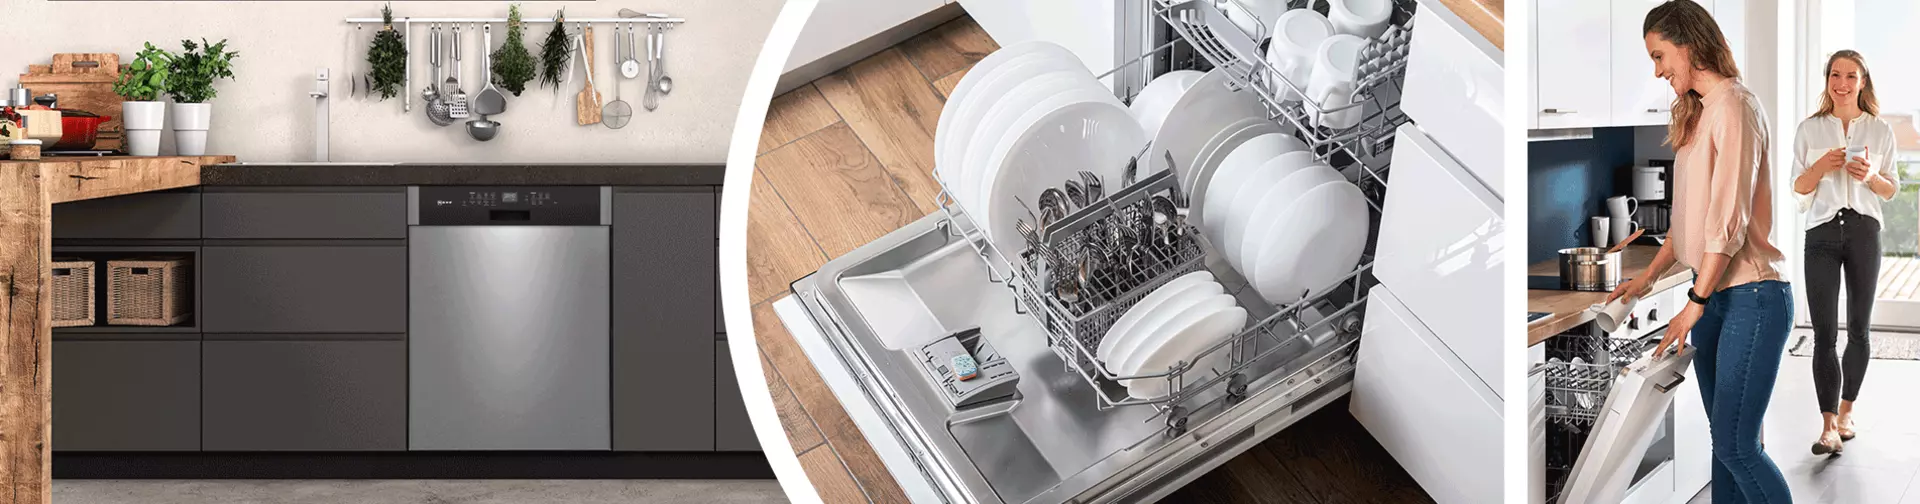 Die Spülmaschine als Einbaugerät in der Küche. Jetzt bei Möbel Inhofer praktische Geschirrspüler entdecken